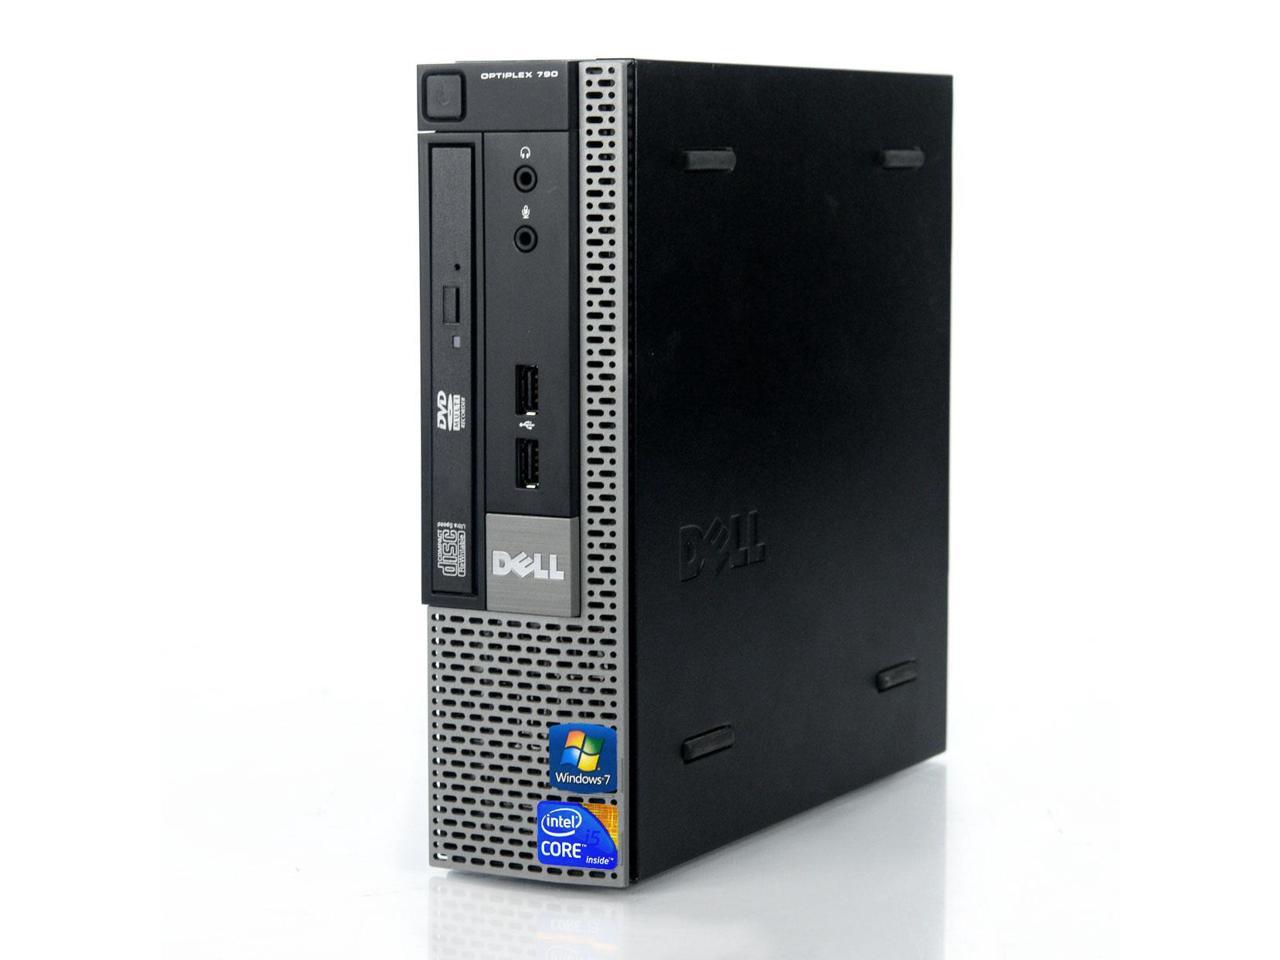 Dell Optiplex 790 USFF i5-2400S 2.50GHz 4GB 256GB SSD Win 10 Pro 1 Yr Wty